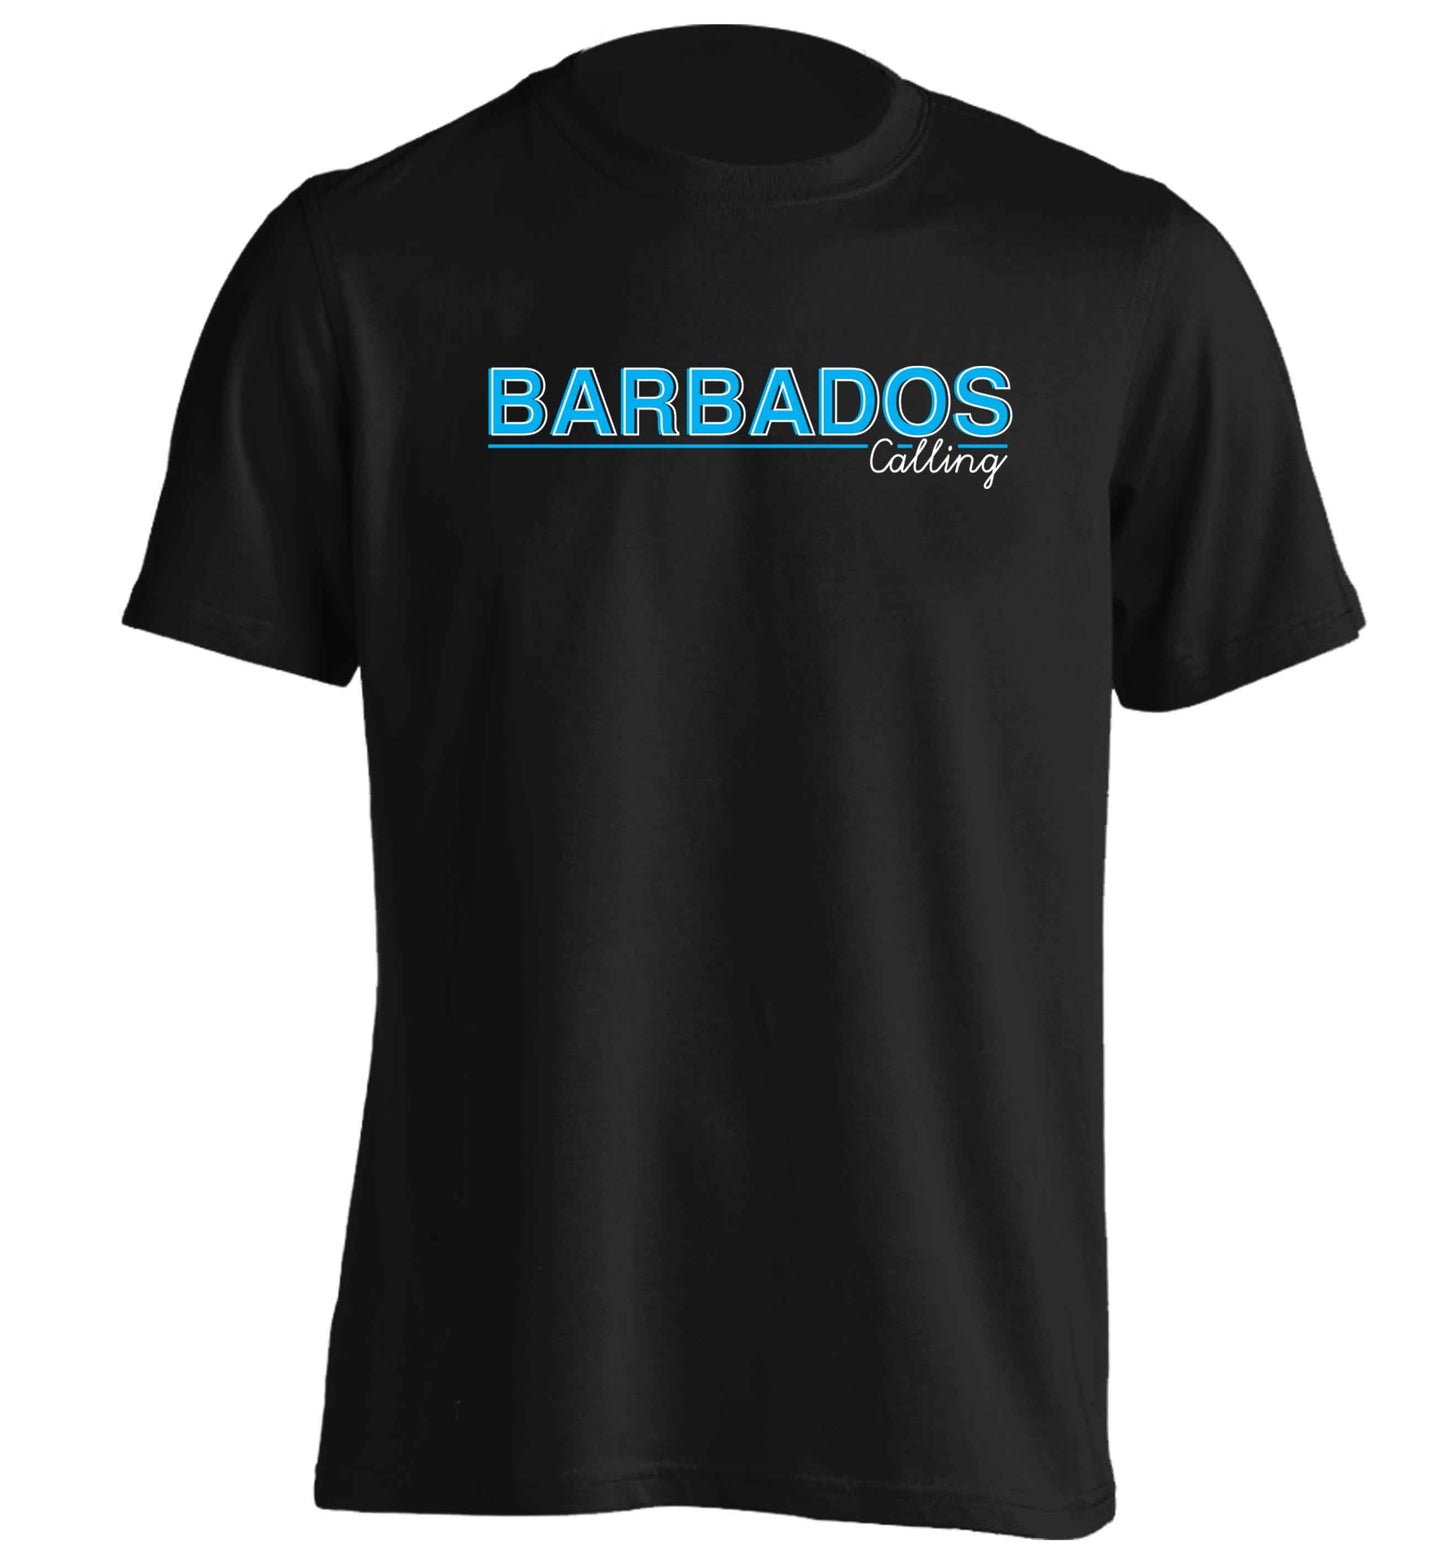 Barbados calling adults unisex black Tshirt 2XL